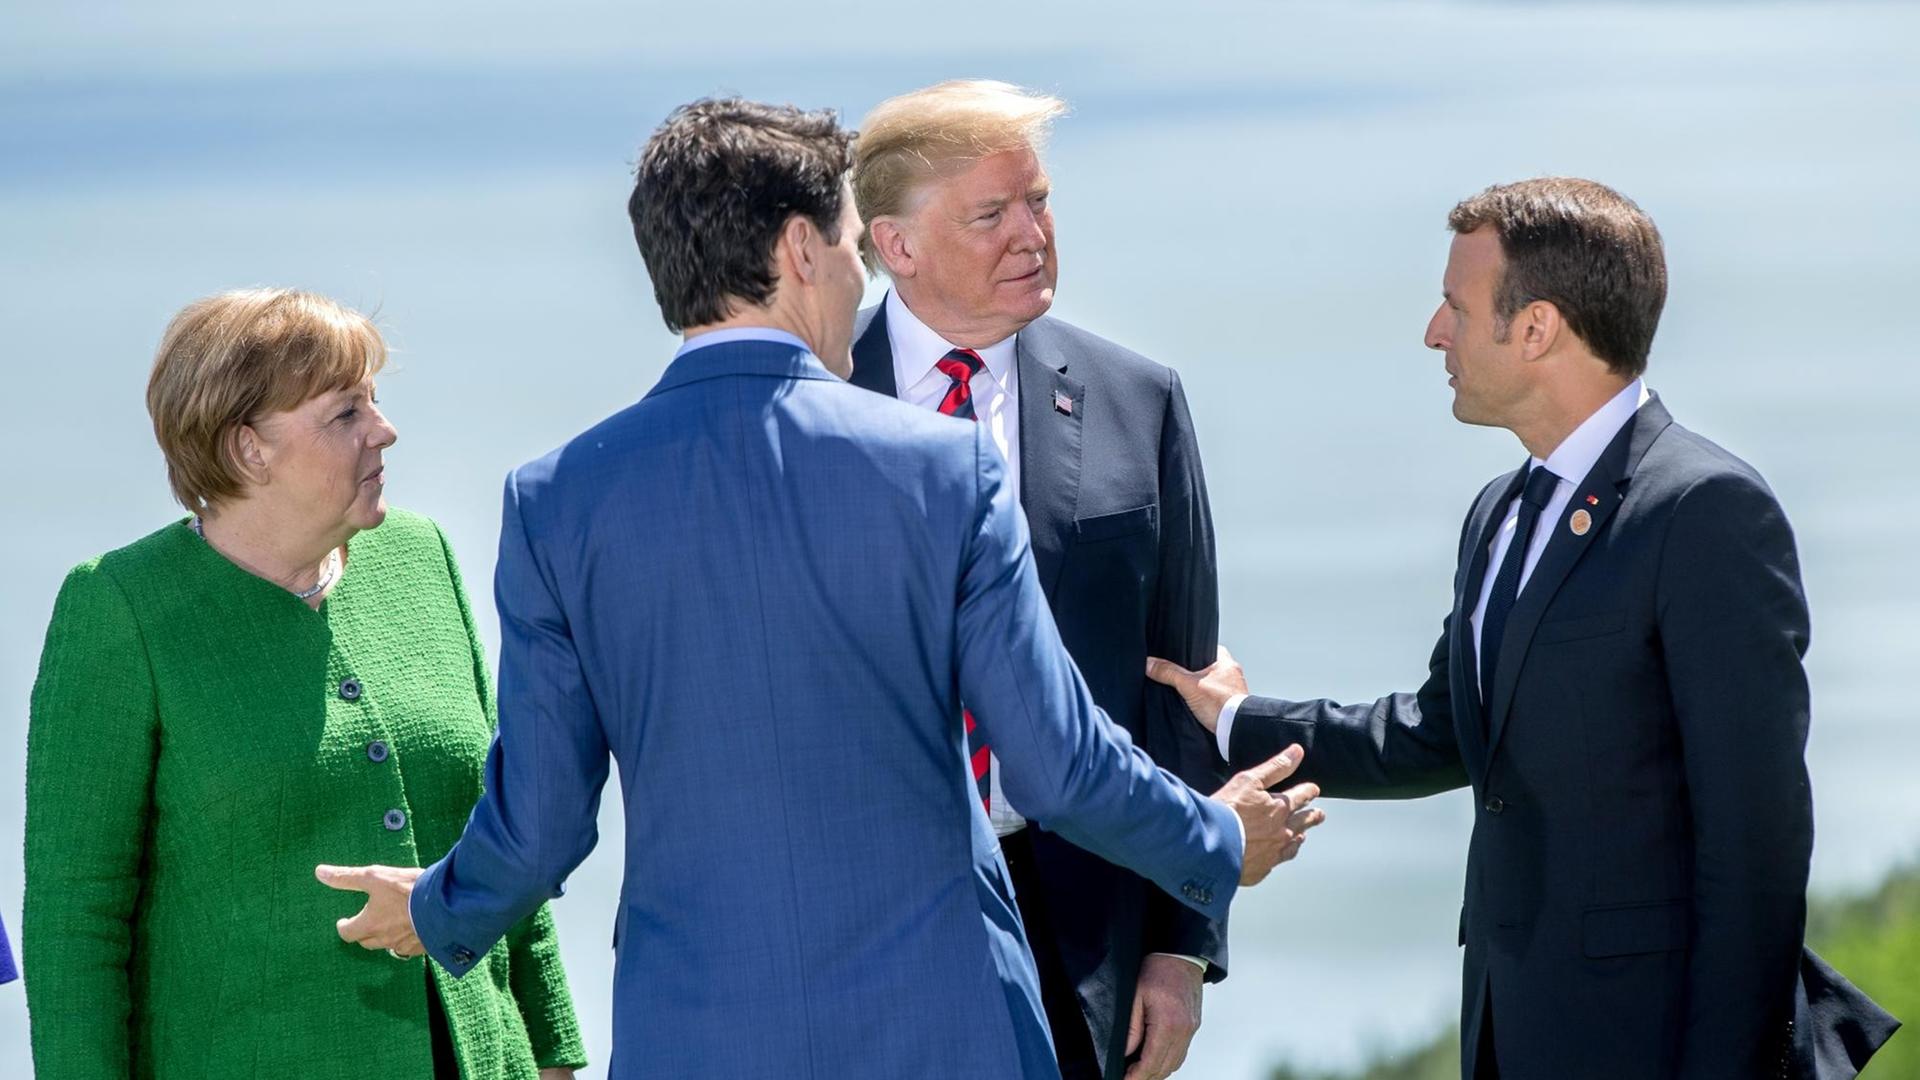 Bundeskanzlerin Angela Merkel (CDU,l), spricht mit Donald Trump, Präsident der USA (M), Emmanuel Macron, Präsident von Frankreich (r) und Justin Trudeau, Premierminister von Kanada. Das Gipfeltreffen der G7 findet in Charlevoix unweit der Ortschaft La Malbaie in der Provinz Québec statt.